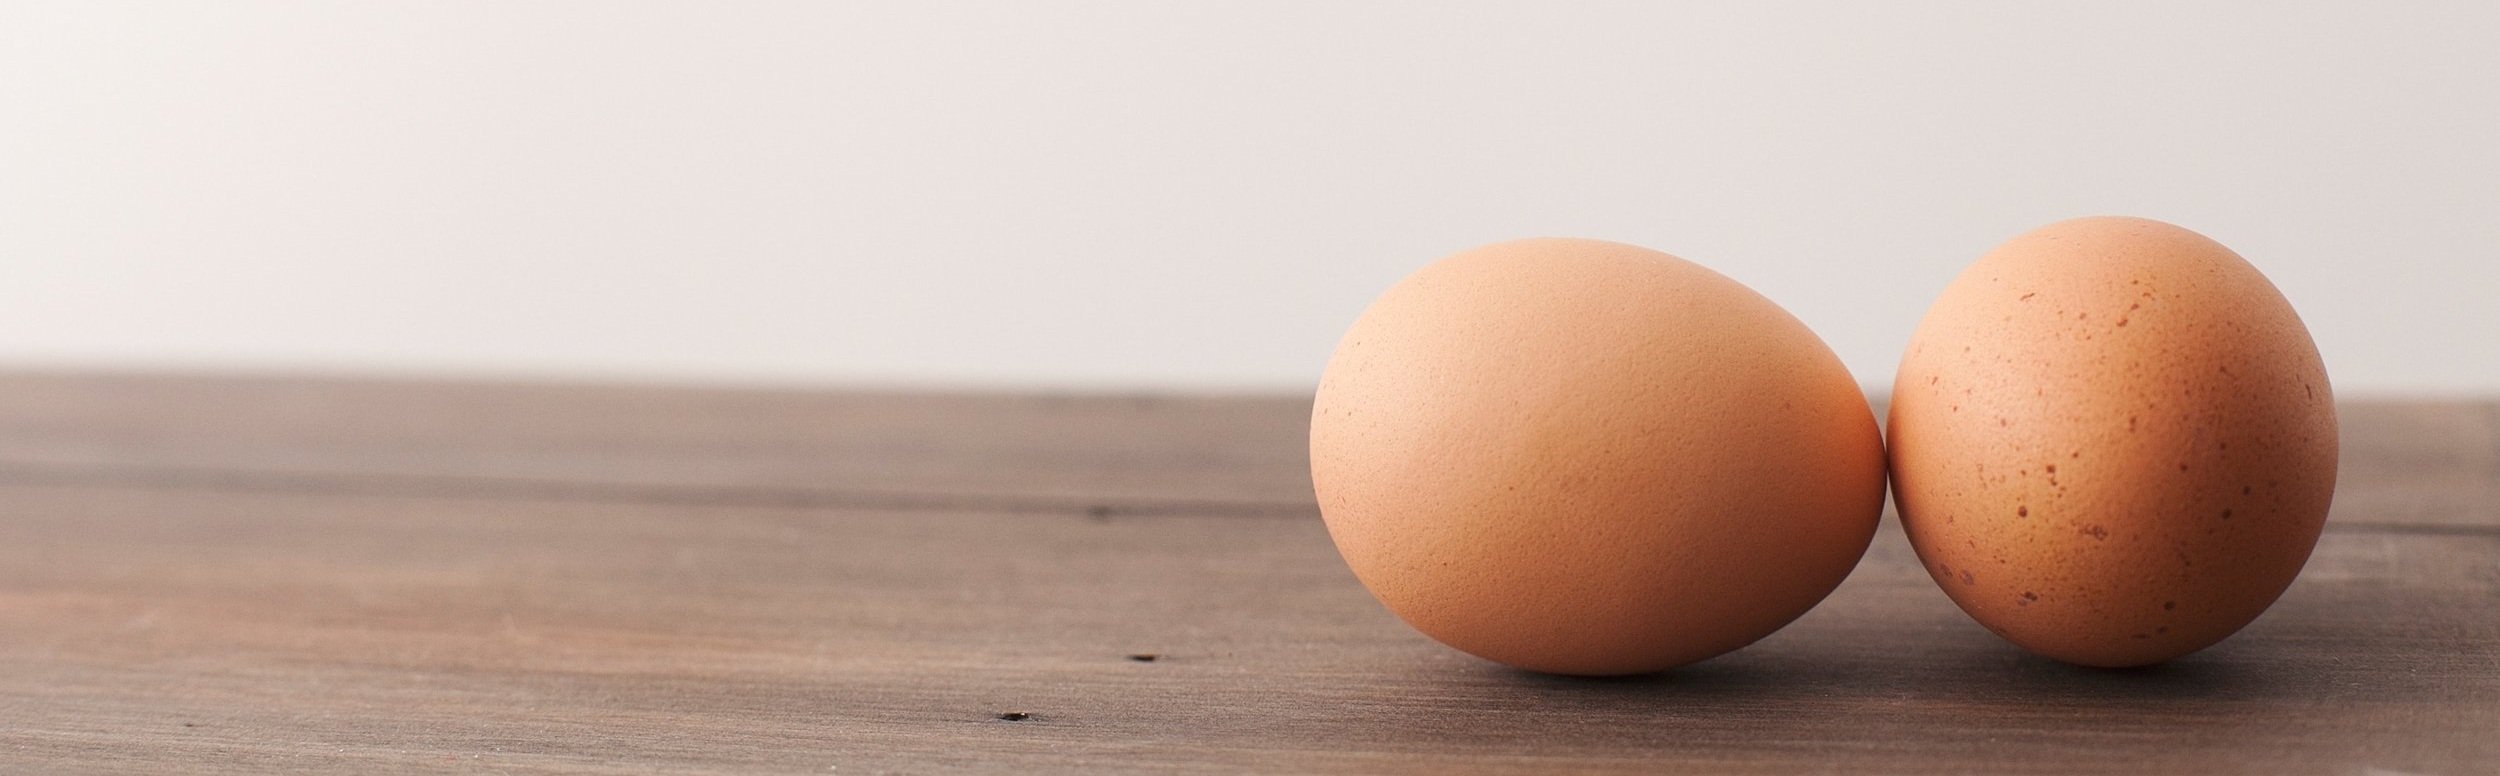 eggs-eggshells-fresh-2642201.jpg